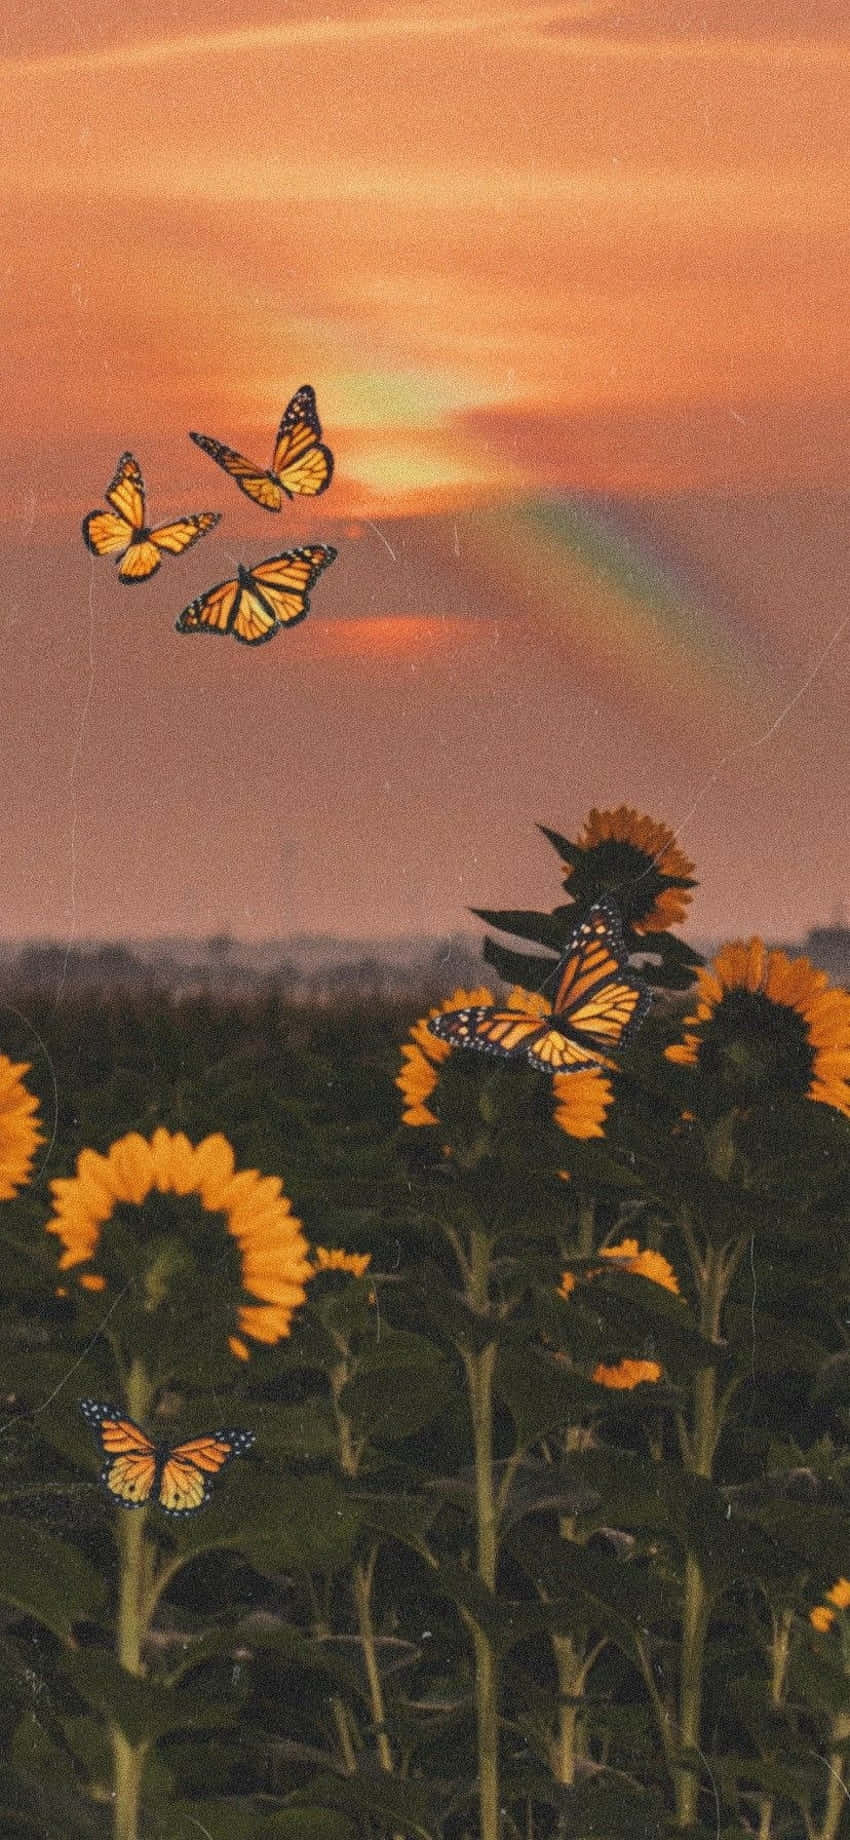 Sunflowers With Butterflies At Sunset.jpg Wallpaper